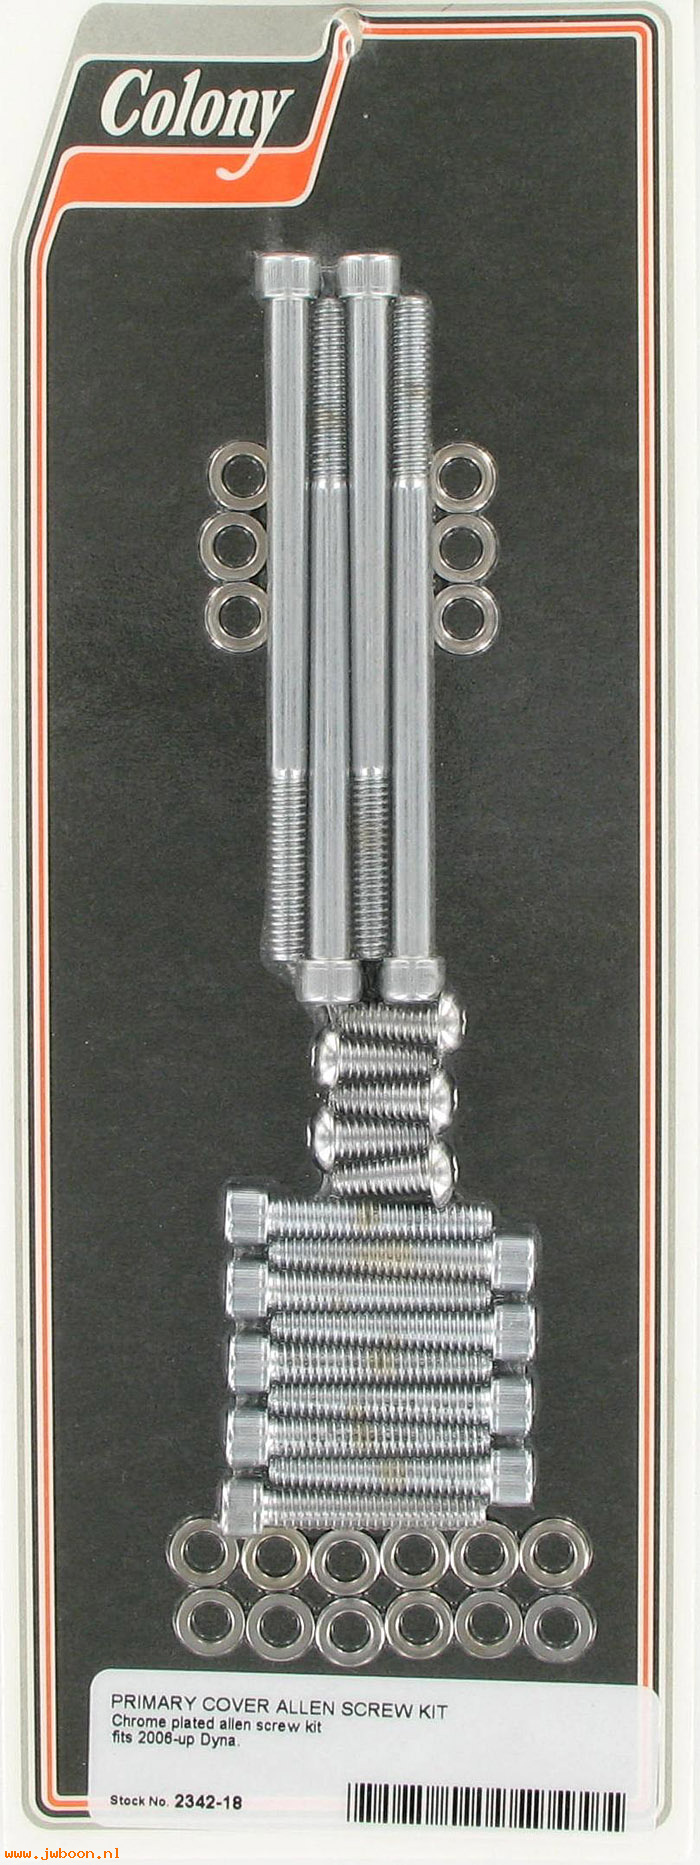 C 2342-18 (): Primary cover screw kit - Allen, in stock, Colony - FXD '06-